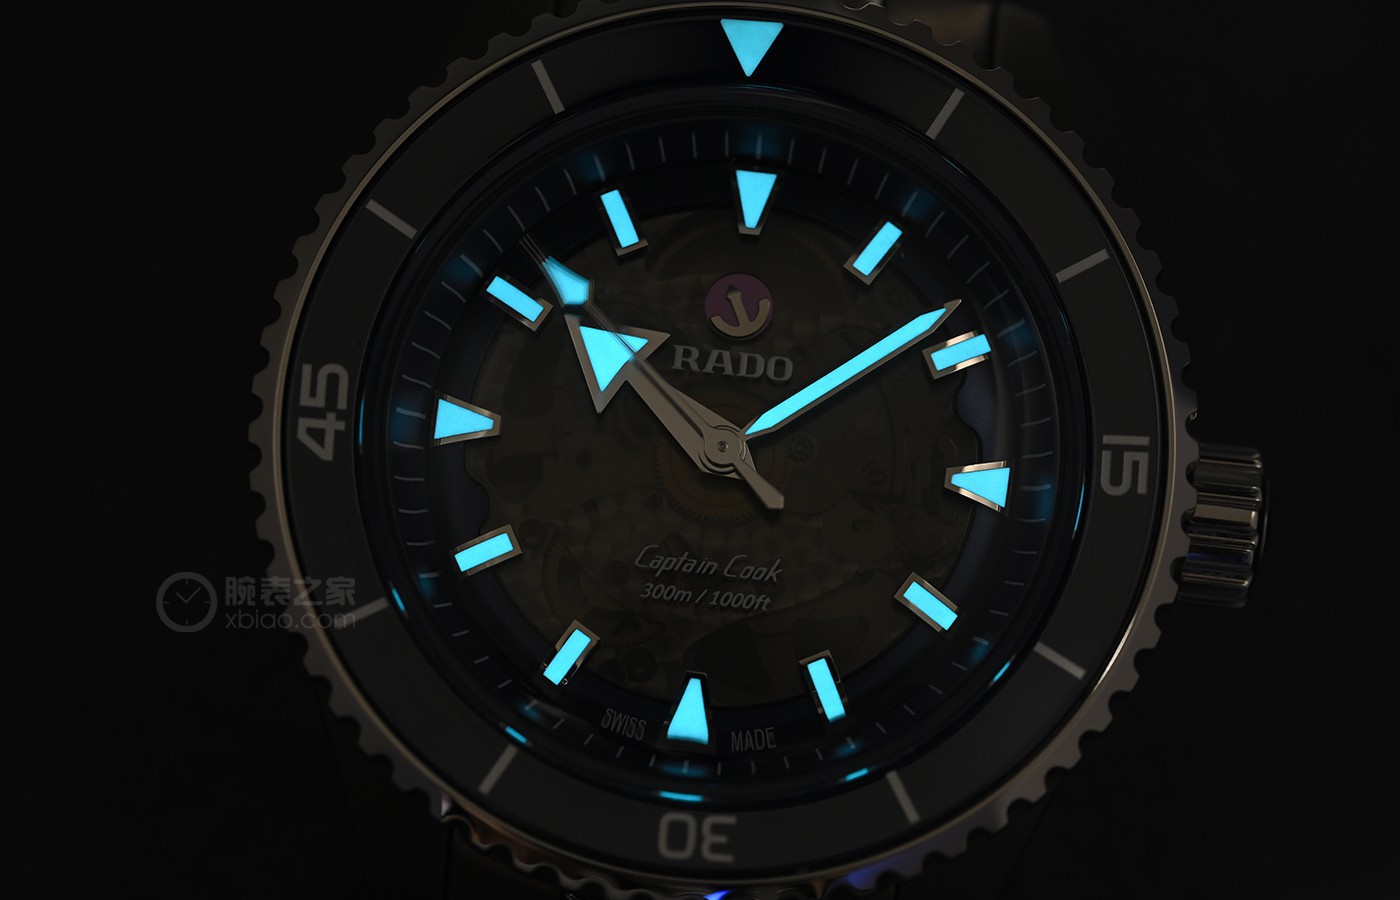 独家盘点说到陶瓷还得看你 品鉴雷达全新Captain Cook库克船长系列高科技陶瓷腕表